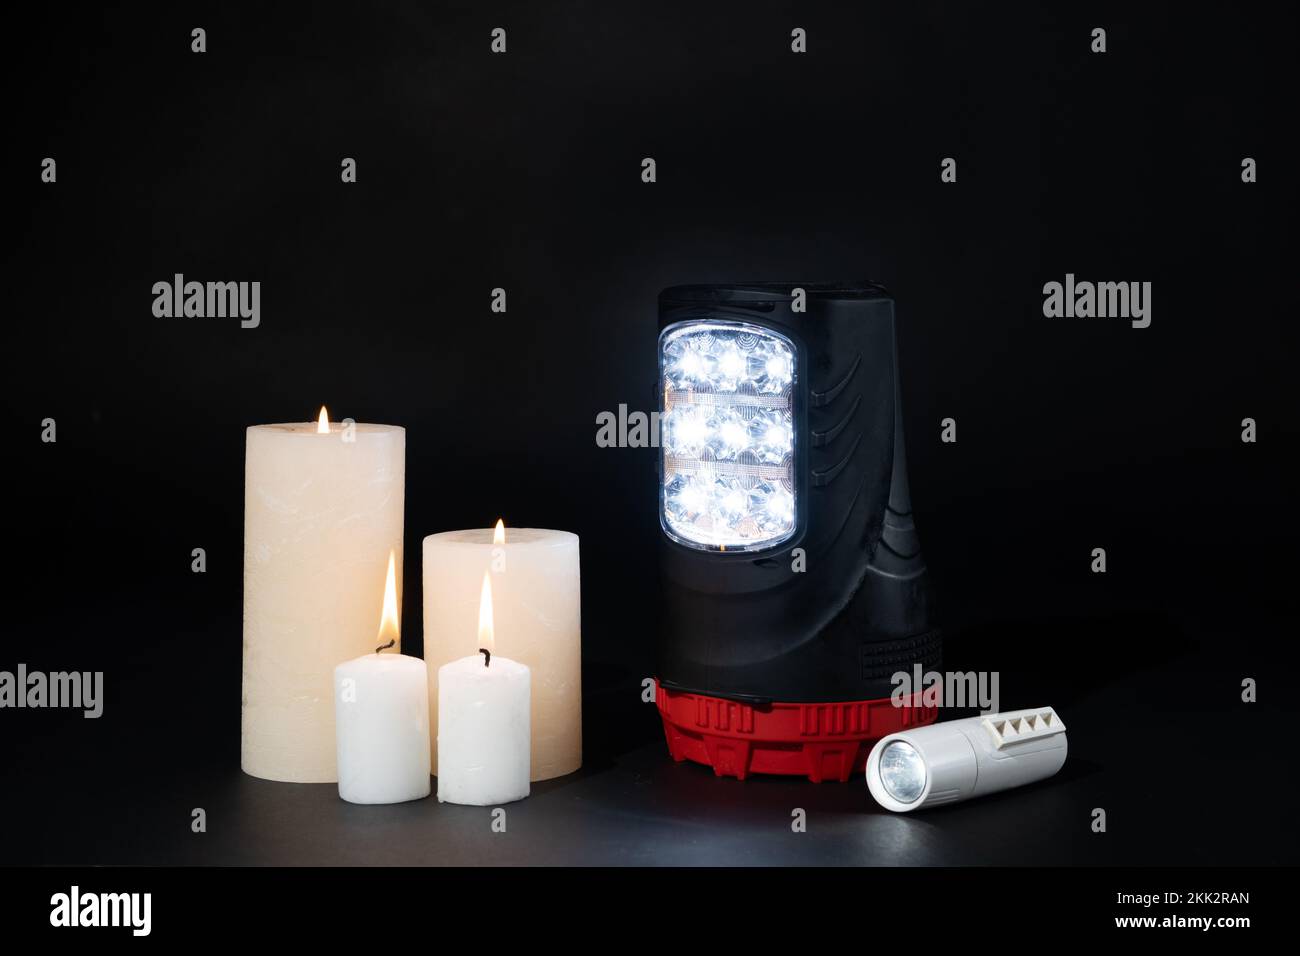 Lampes torches électriques et bougies allumées sur fond noir, sources alternatives de lumière et de chaleur Banque D'Images